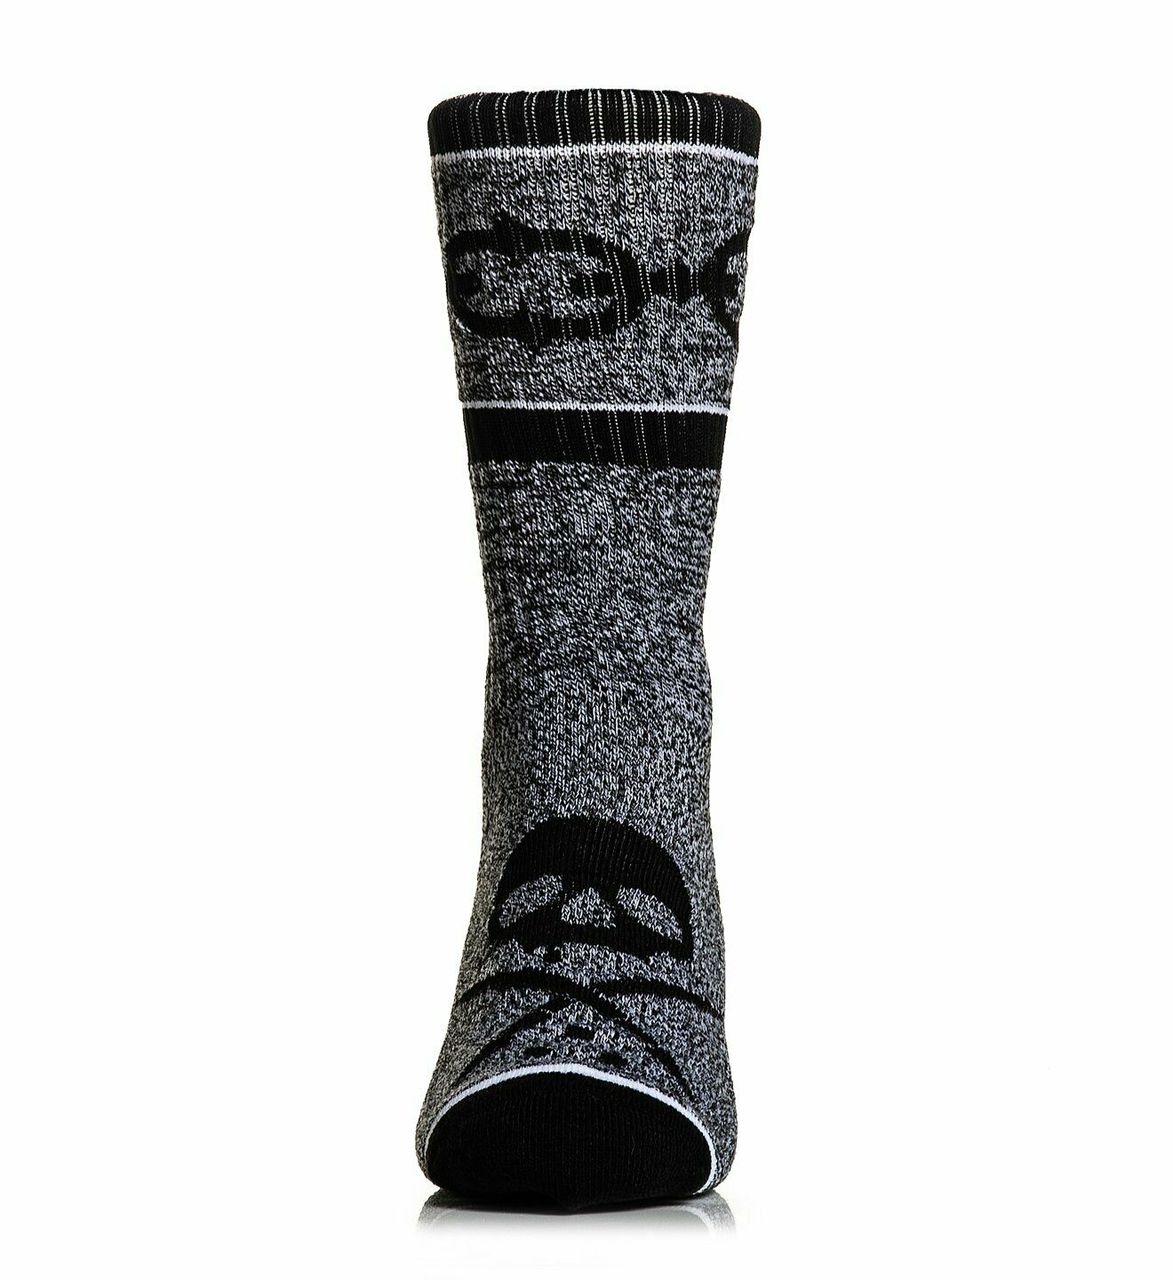 Linked Socks Grey by Sullen